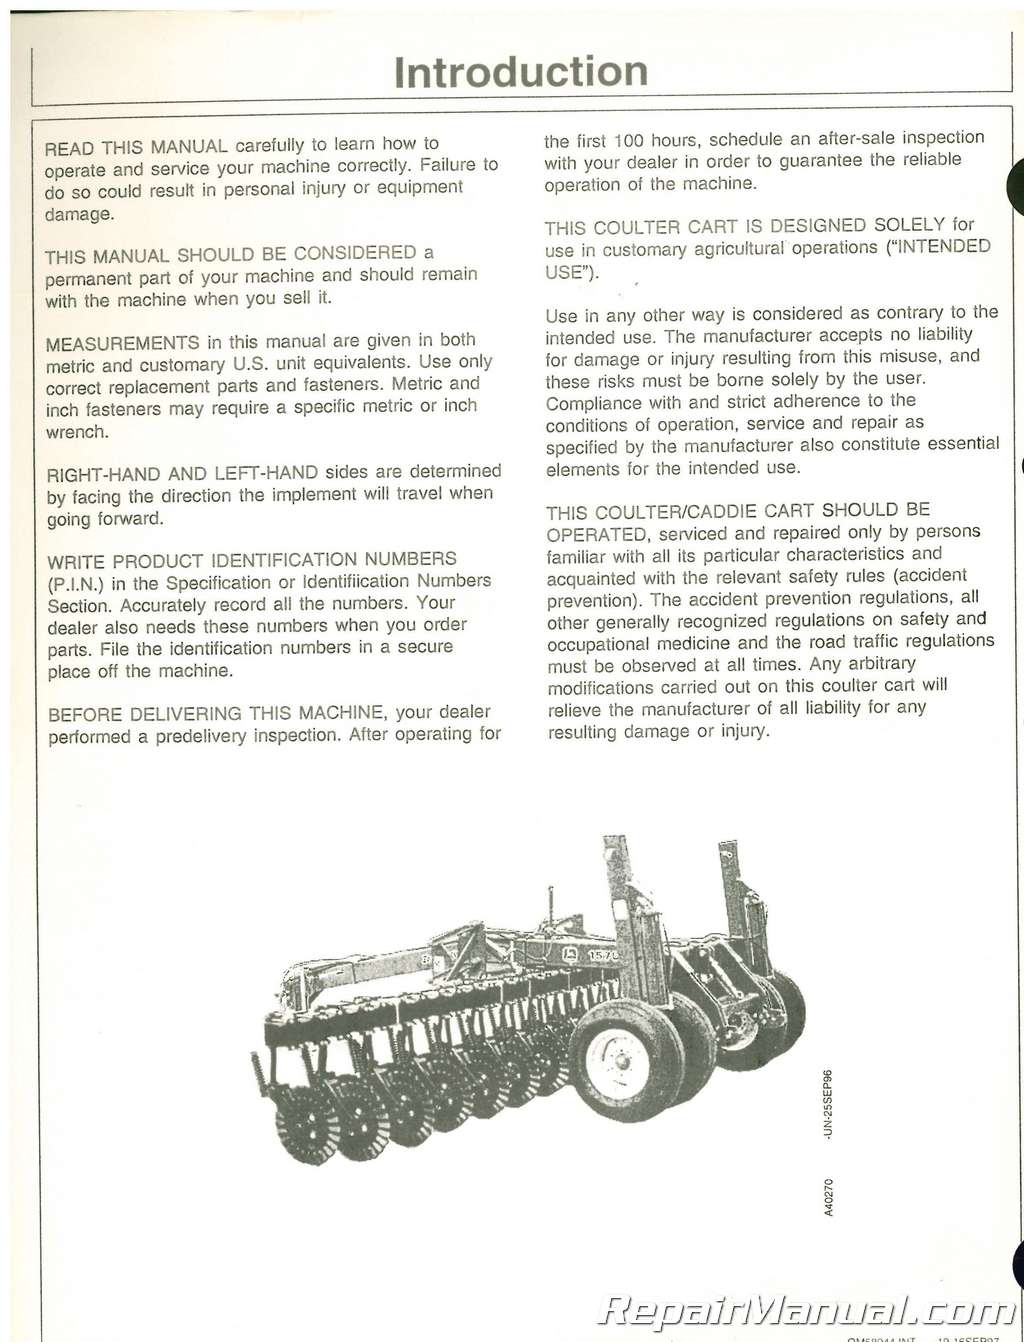 Used John Deere 1570 Coulter/Caddie Cart Operators Manual